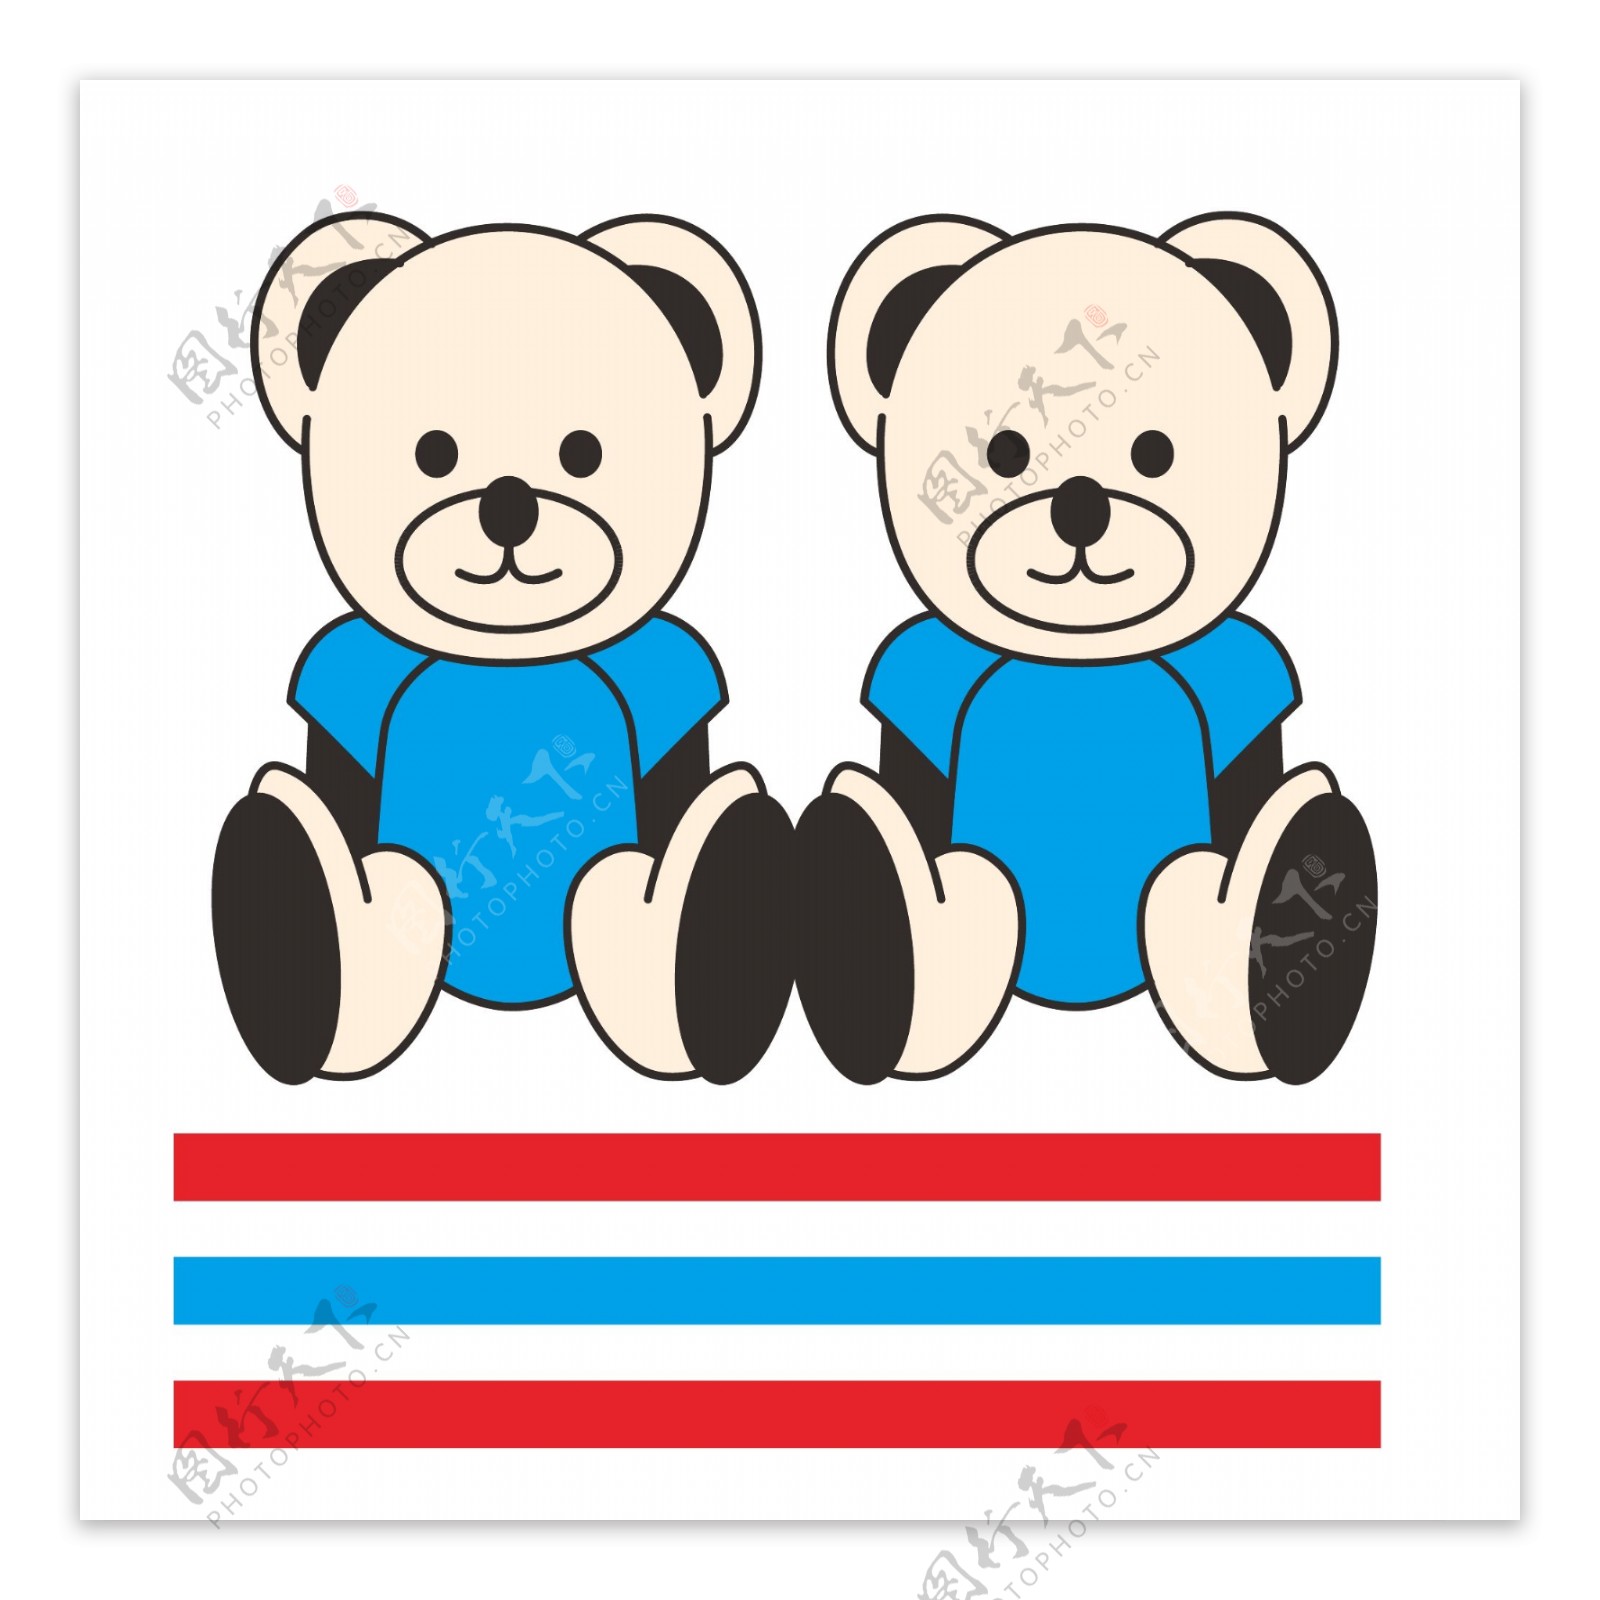 两只小熊可爱烫画图片